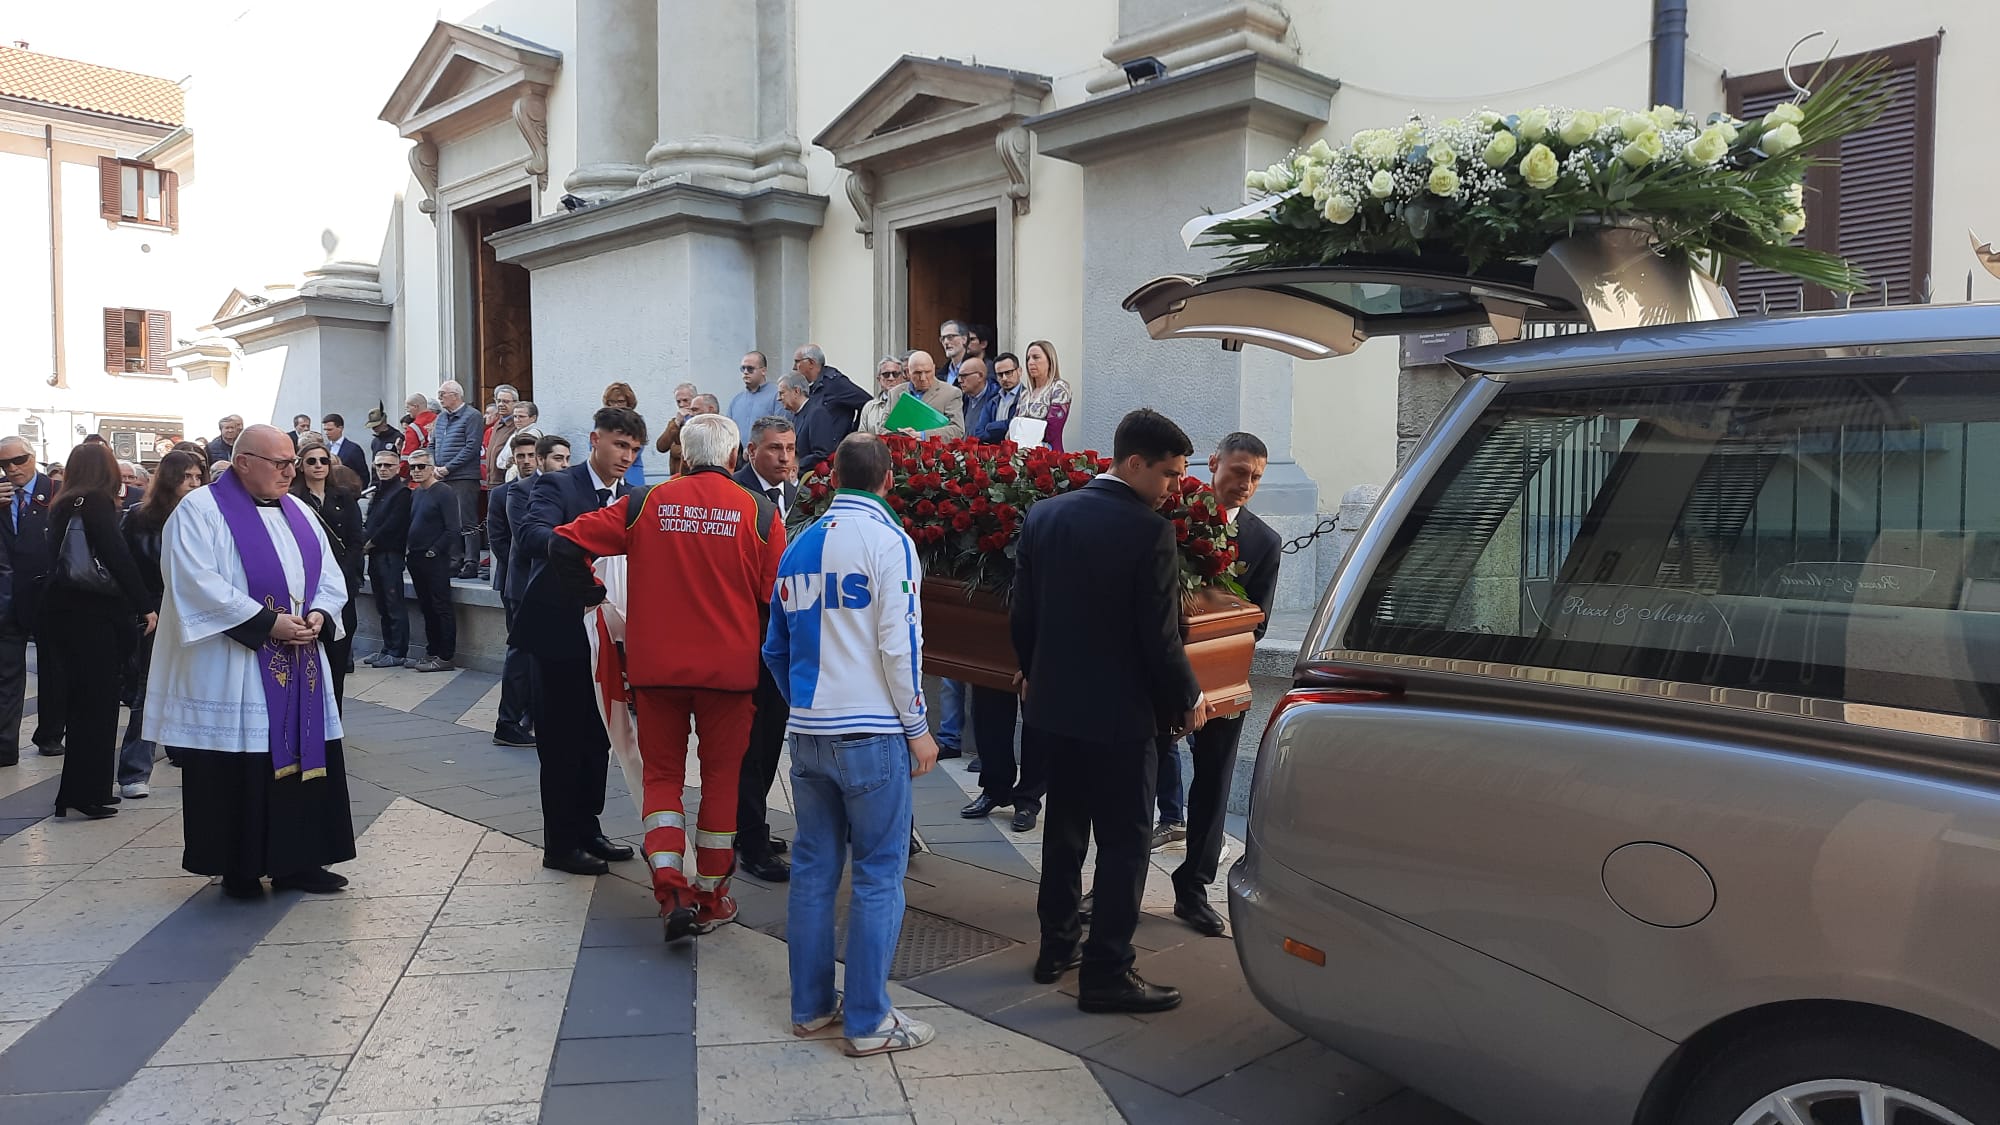 Nova milanese funerale Renato Caimi